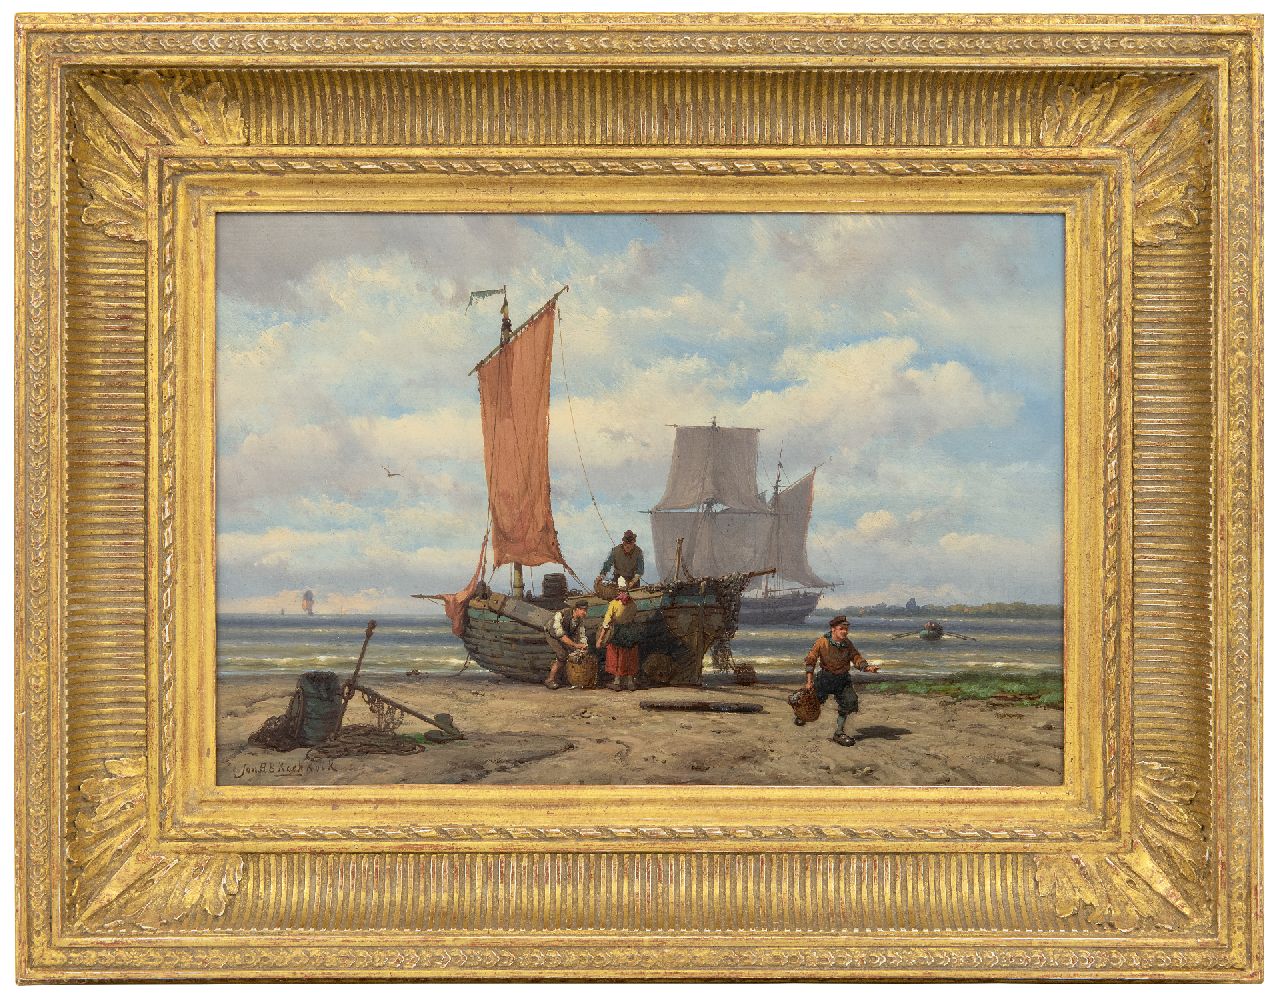 Koekkoek J.H.B.  | Johannes Hermanus Barend 'Jan H.B.' Koekkoek | Schilderijen te koop aangeboden | Het uitladen van de vangst, olieverf op paneel 23,5 x 34,3 cm, gesigneerd linksonder